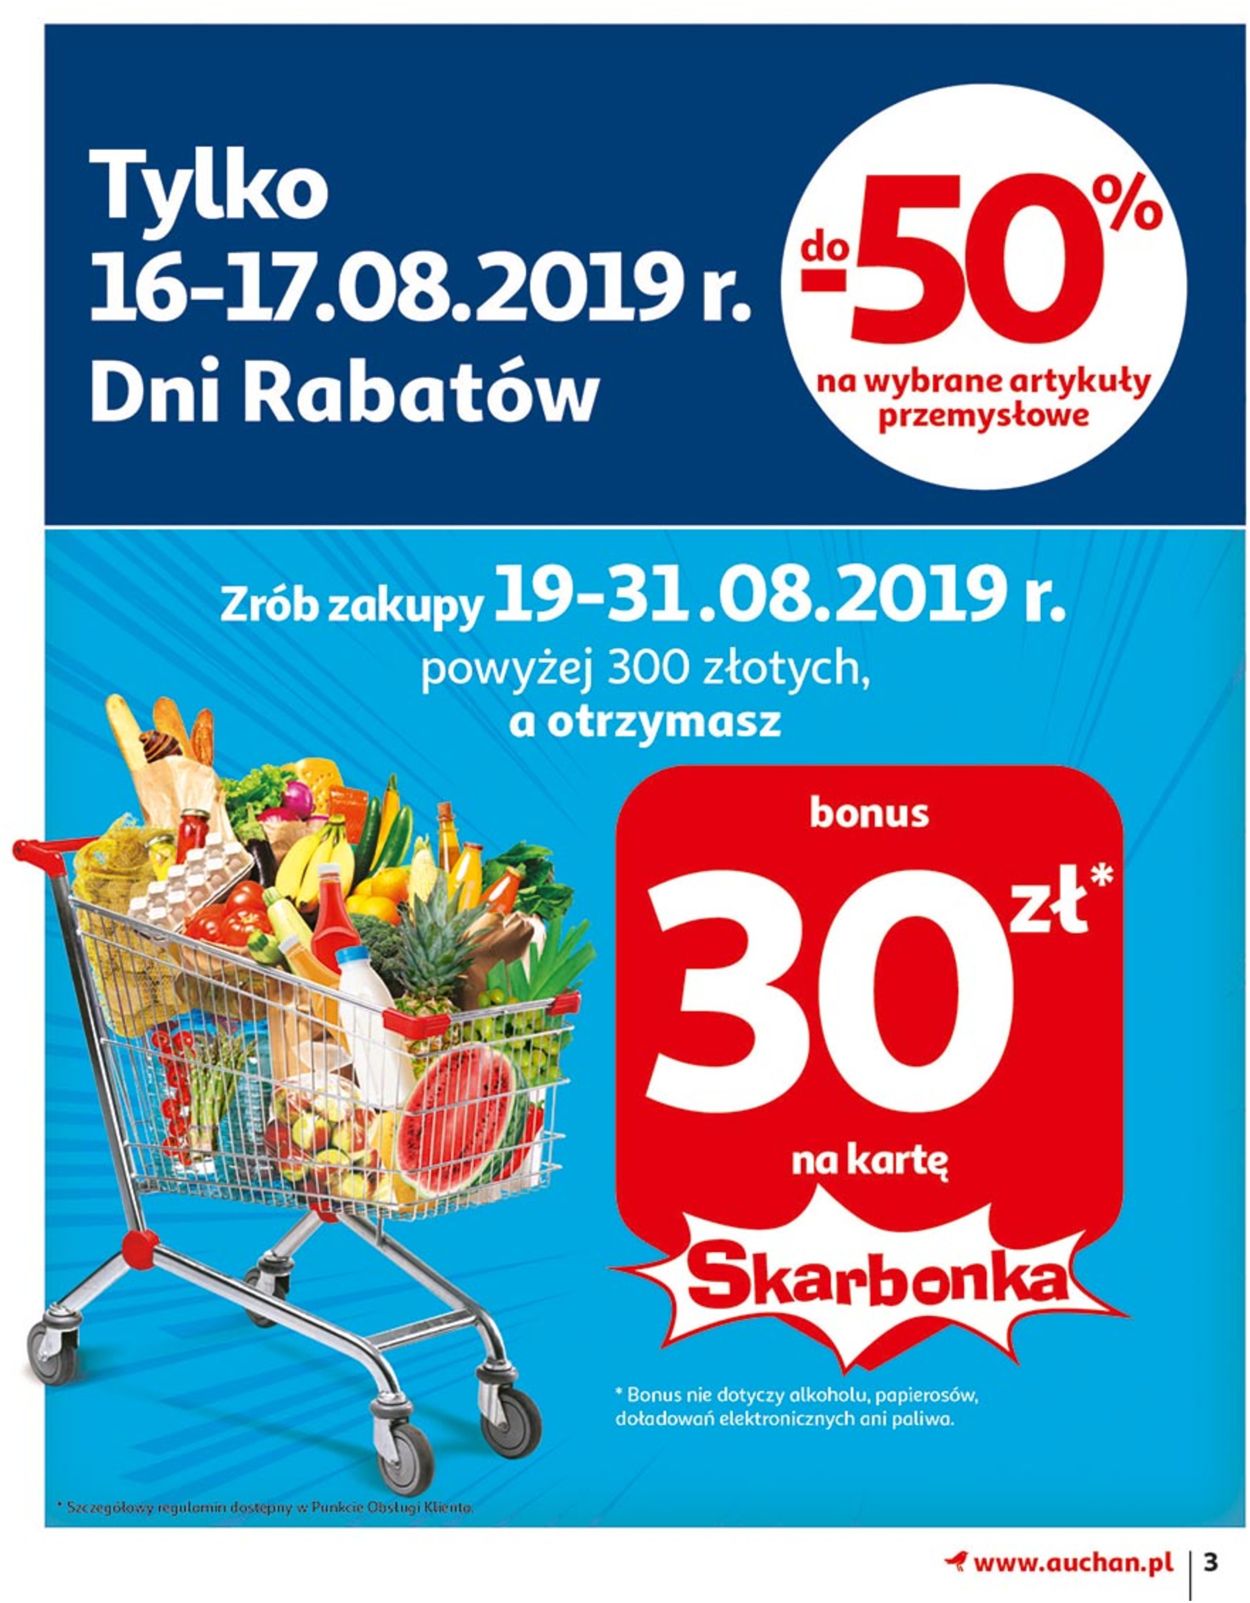 Auchan Gazetka od 22.08.2019